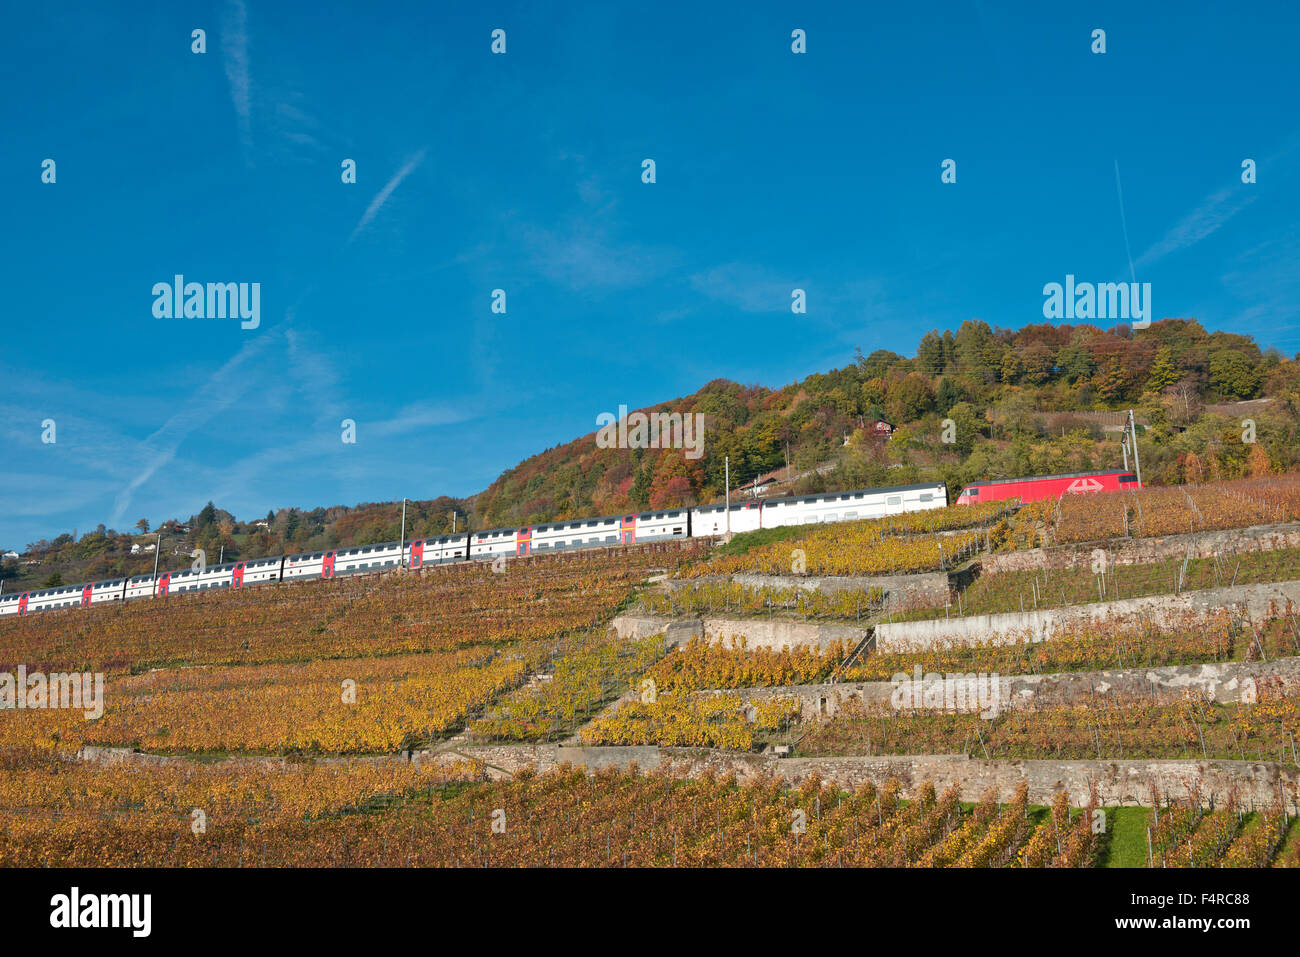 Schweiz, Weltkulturerbe, kulturelles Erbe, Weinbau, Weinberge, Wein, Verkehr, Eisenbahn, Zug, Feature, Herbst, Stockfoto